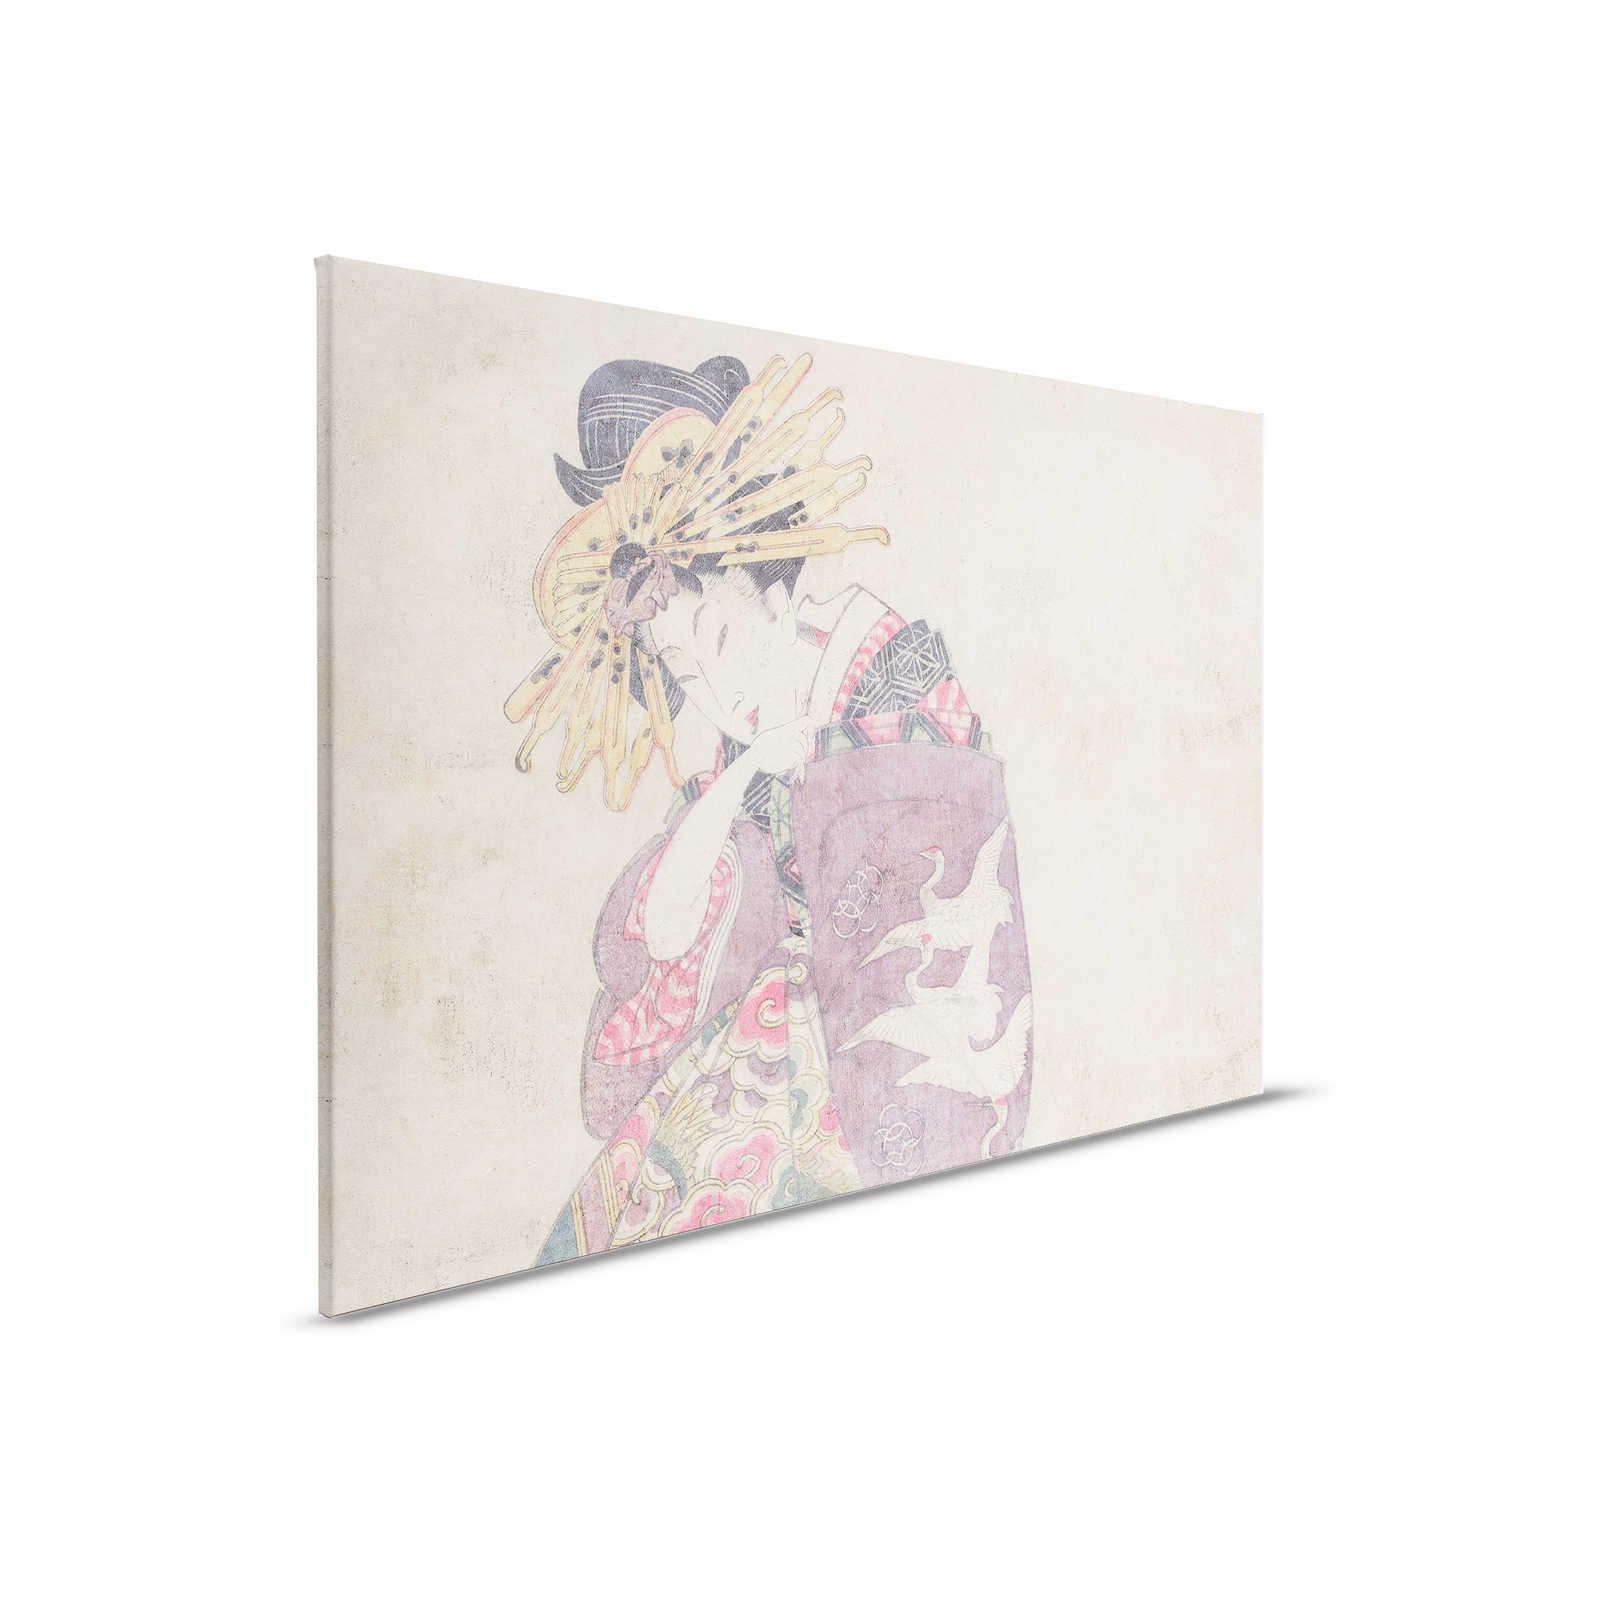 Osaka 1 - Impression d'art sur toile Décor asiatique style vintage - 0,90 m x 0,60 m
